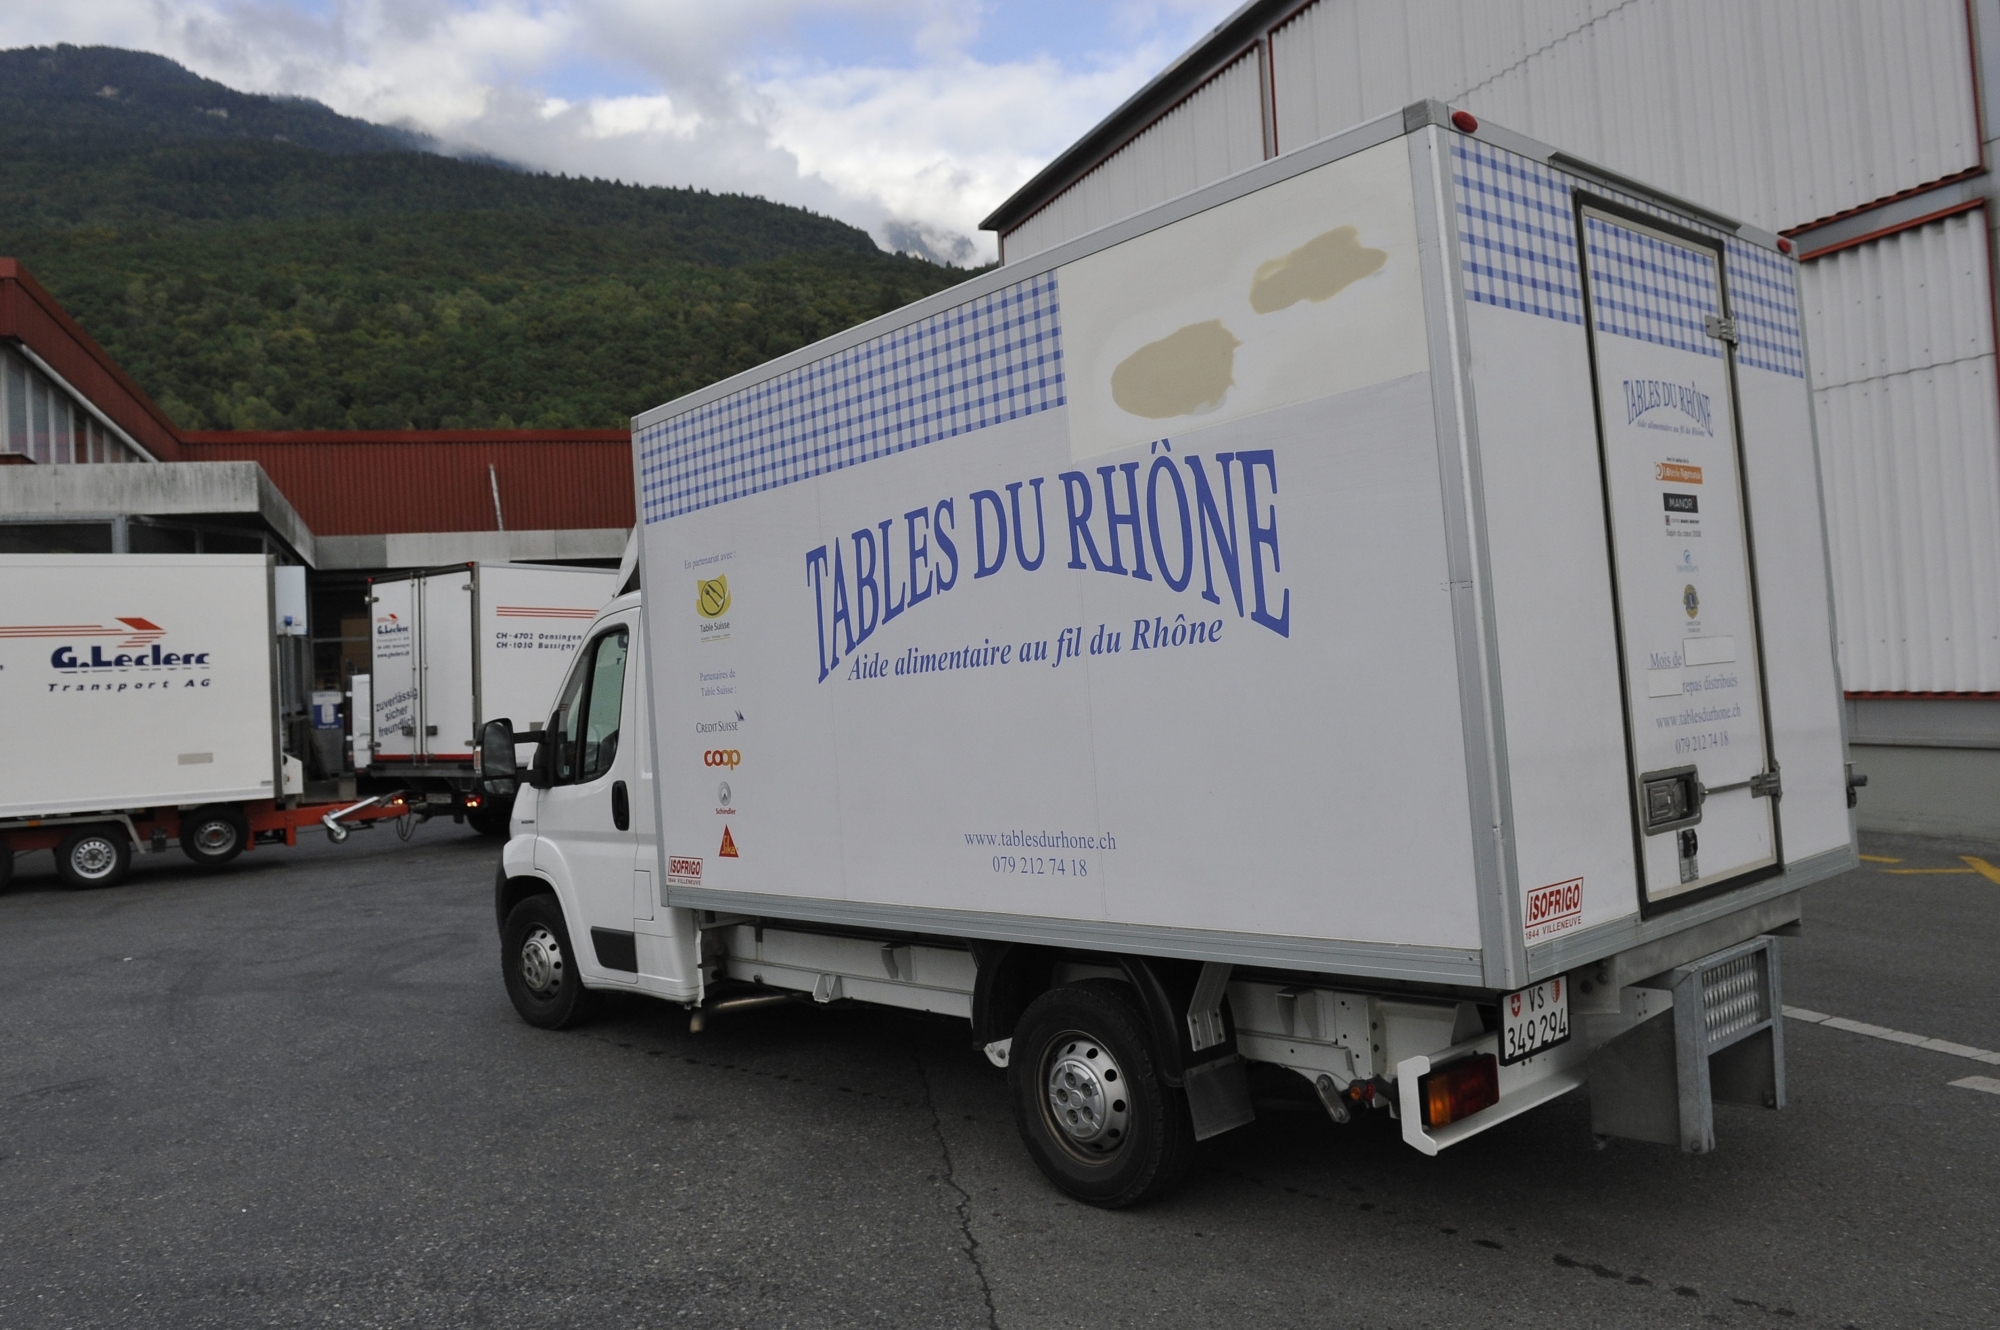 Pour la première fois, les Tables du Rhône vont accorder des bons en argent pour l'achat d'aliments.